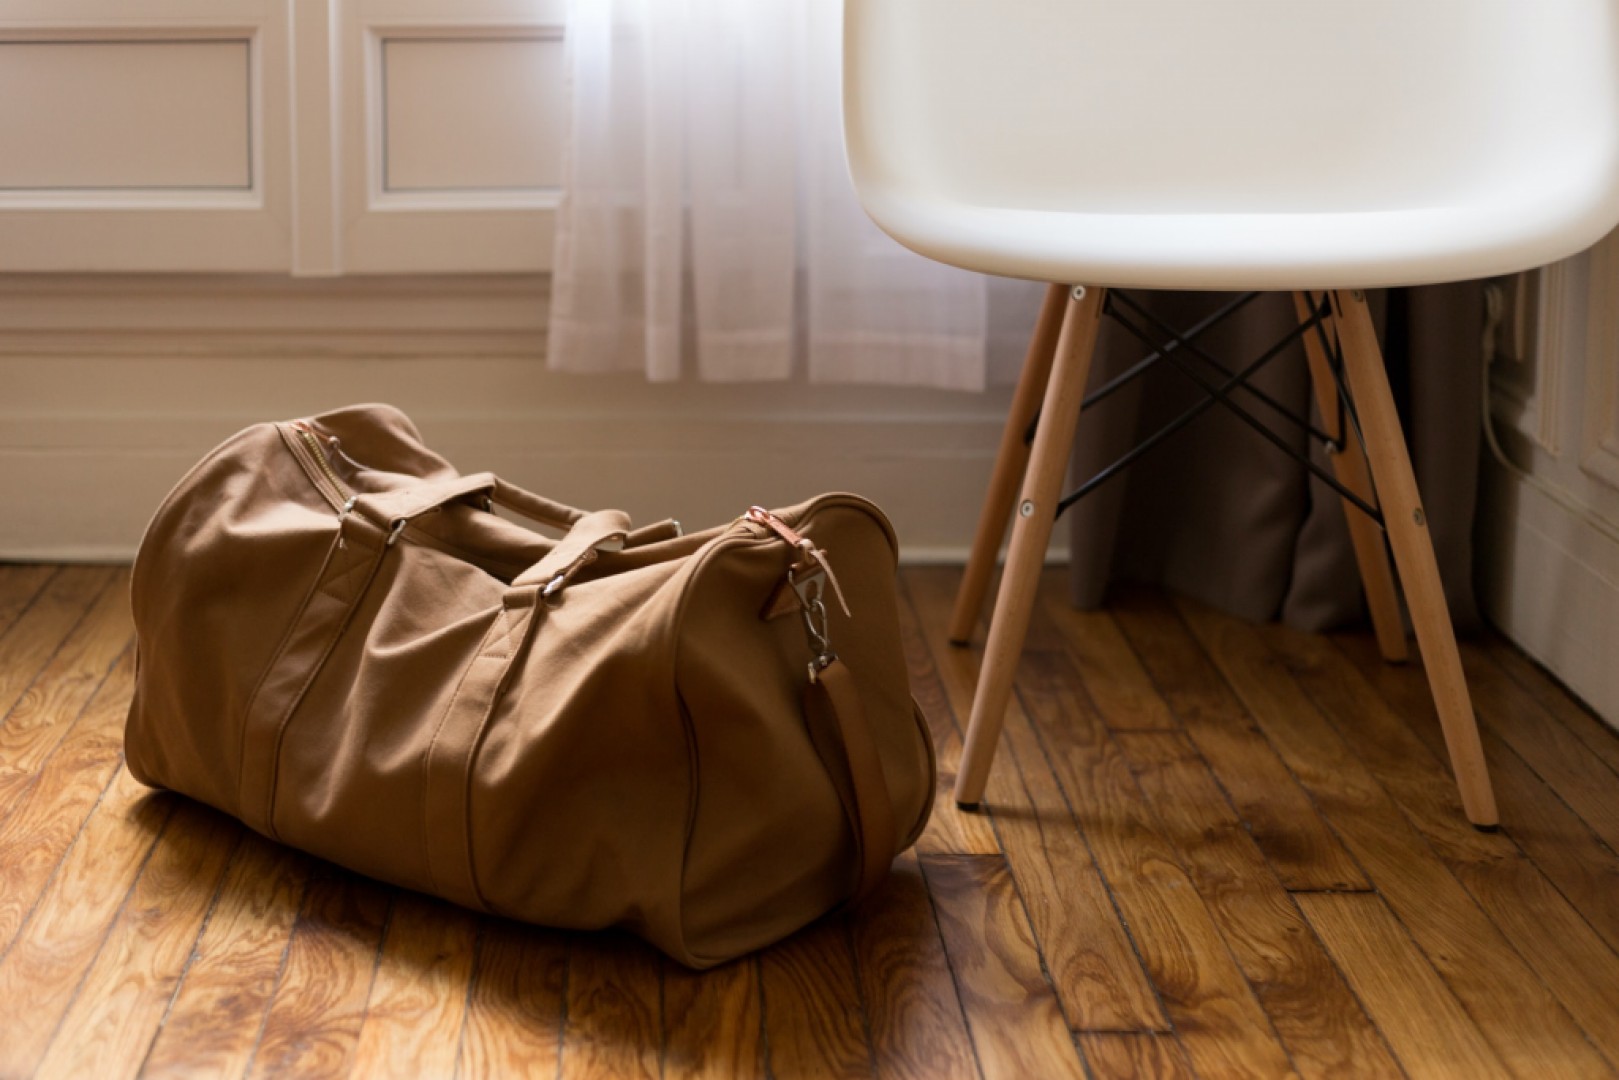 Nahradia cestovné tašky klasické kufre? Pozreli sme sa na ich najväčšie výhody